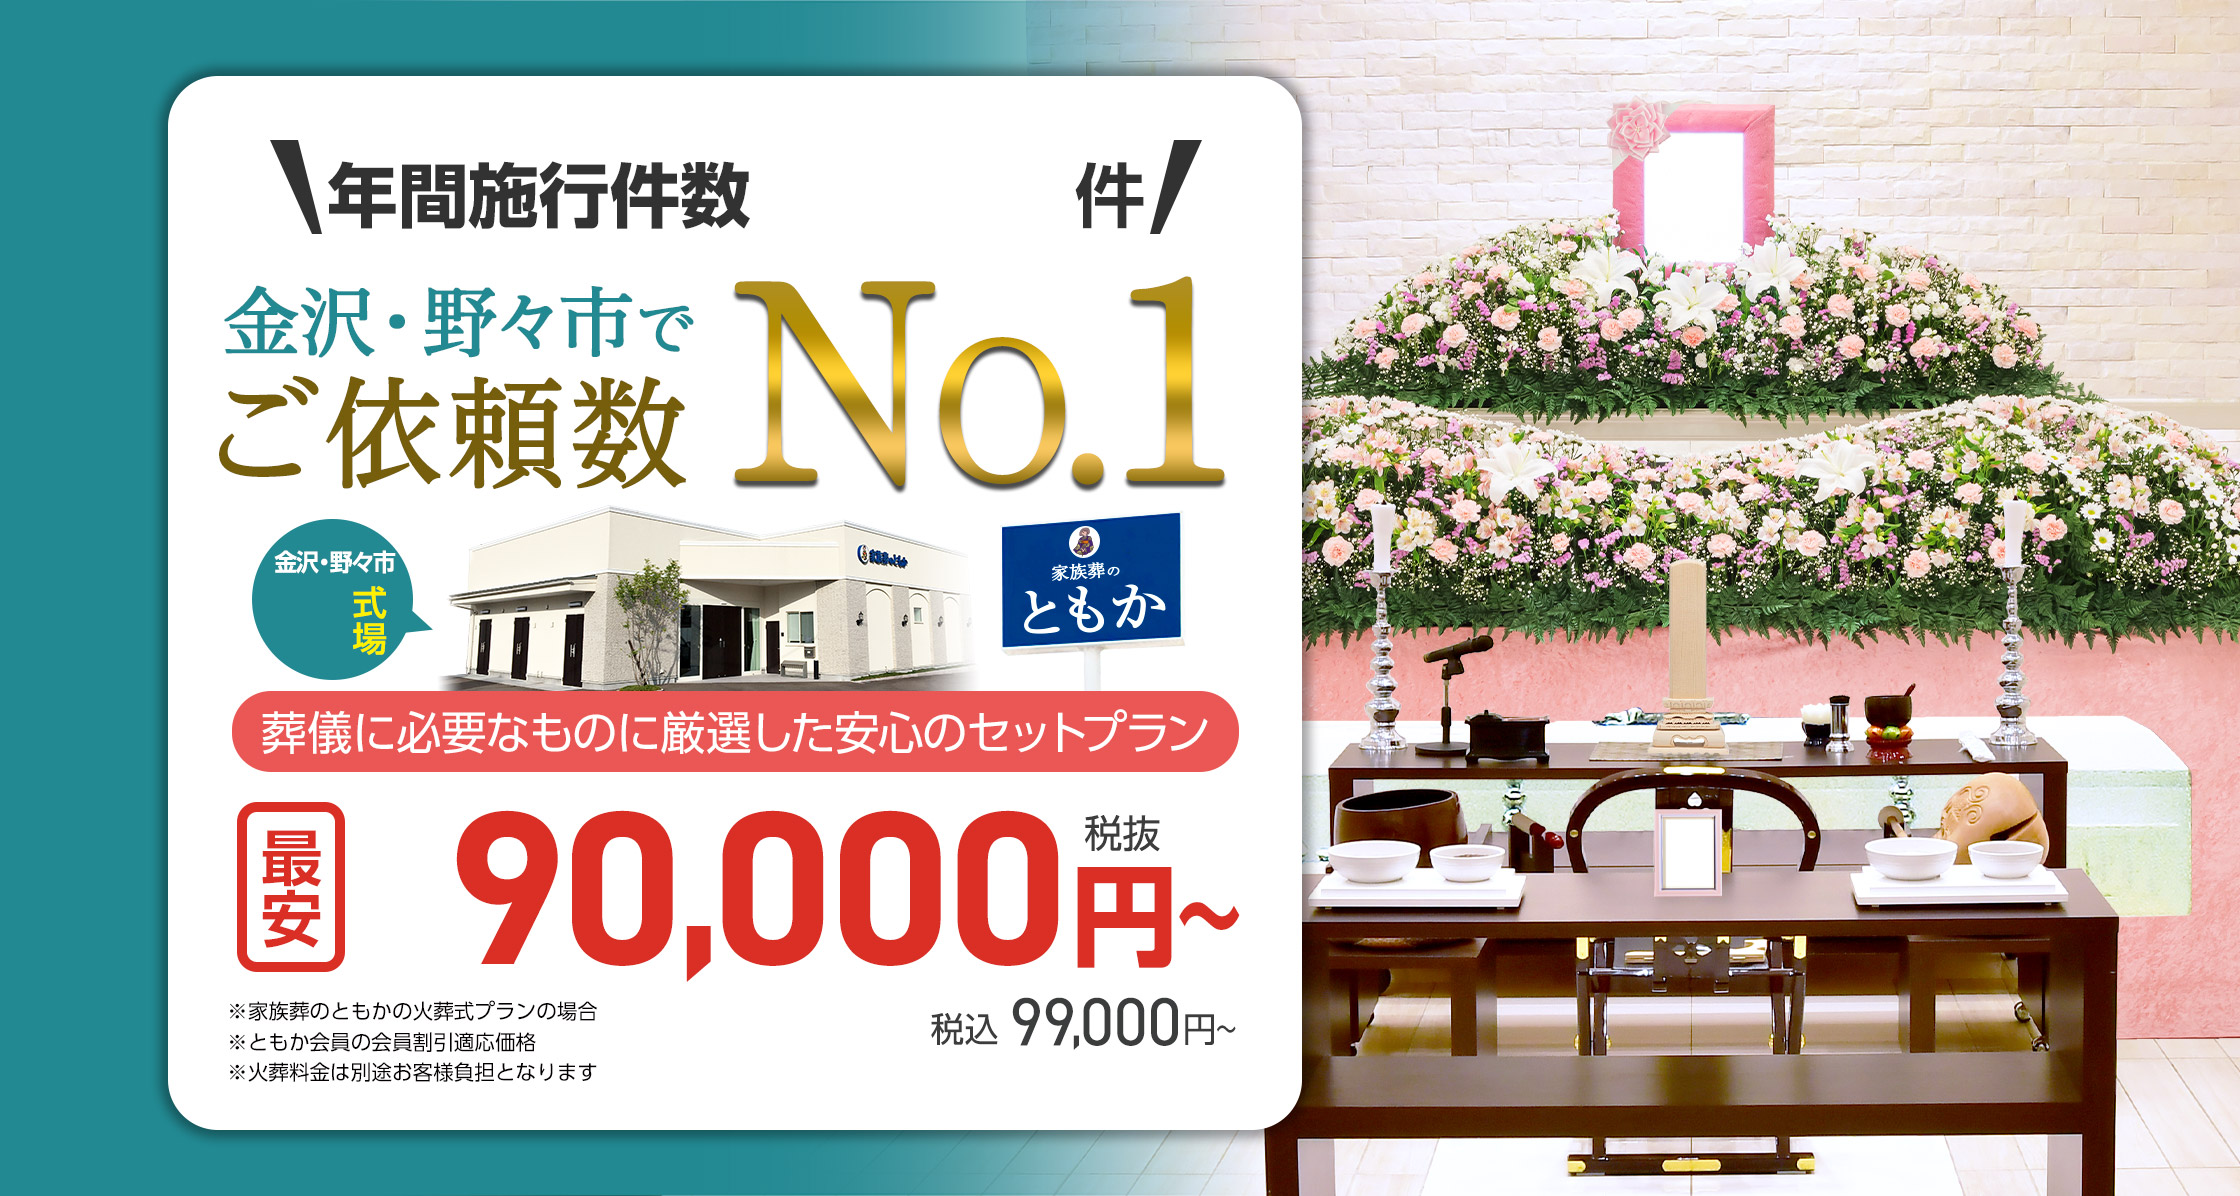 石川県での家族葬ならセットプランが最安9.9万円(税込)のともか  年間施行件数3,300件